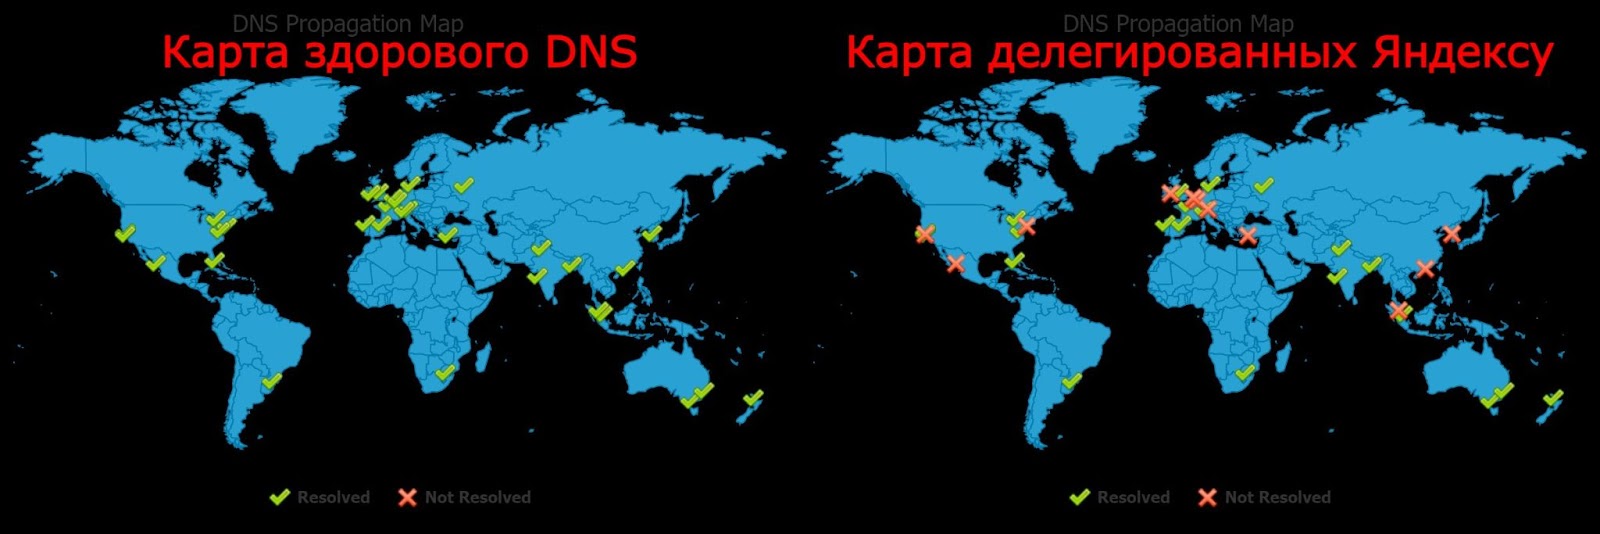 Выбор DNS-хостинга после 10 лет с Яндексом - 1